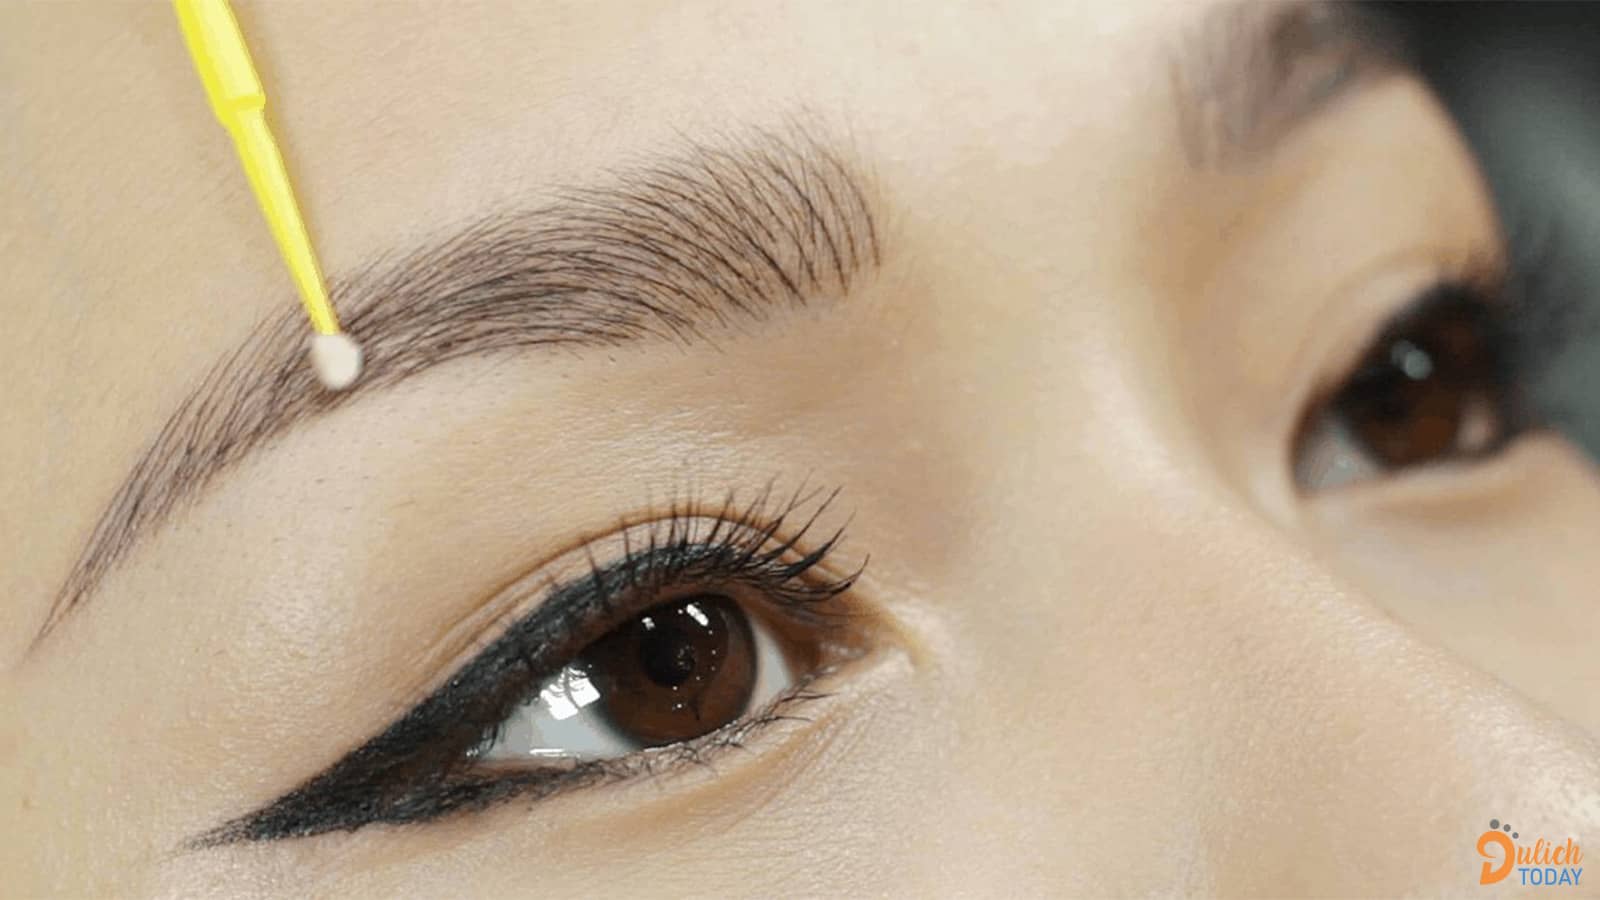 Tiệm DK Eyebrows & Beauty – Chuyên Điêu Khắc Lông Mày Hà Nội. Nguồn: Internet